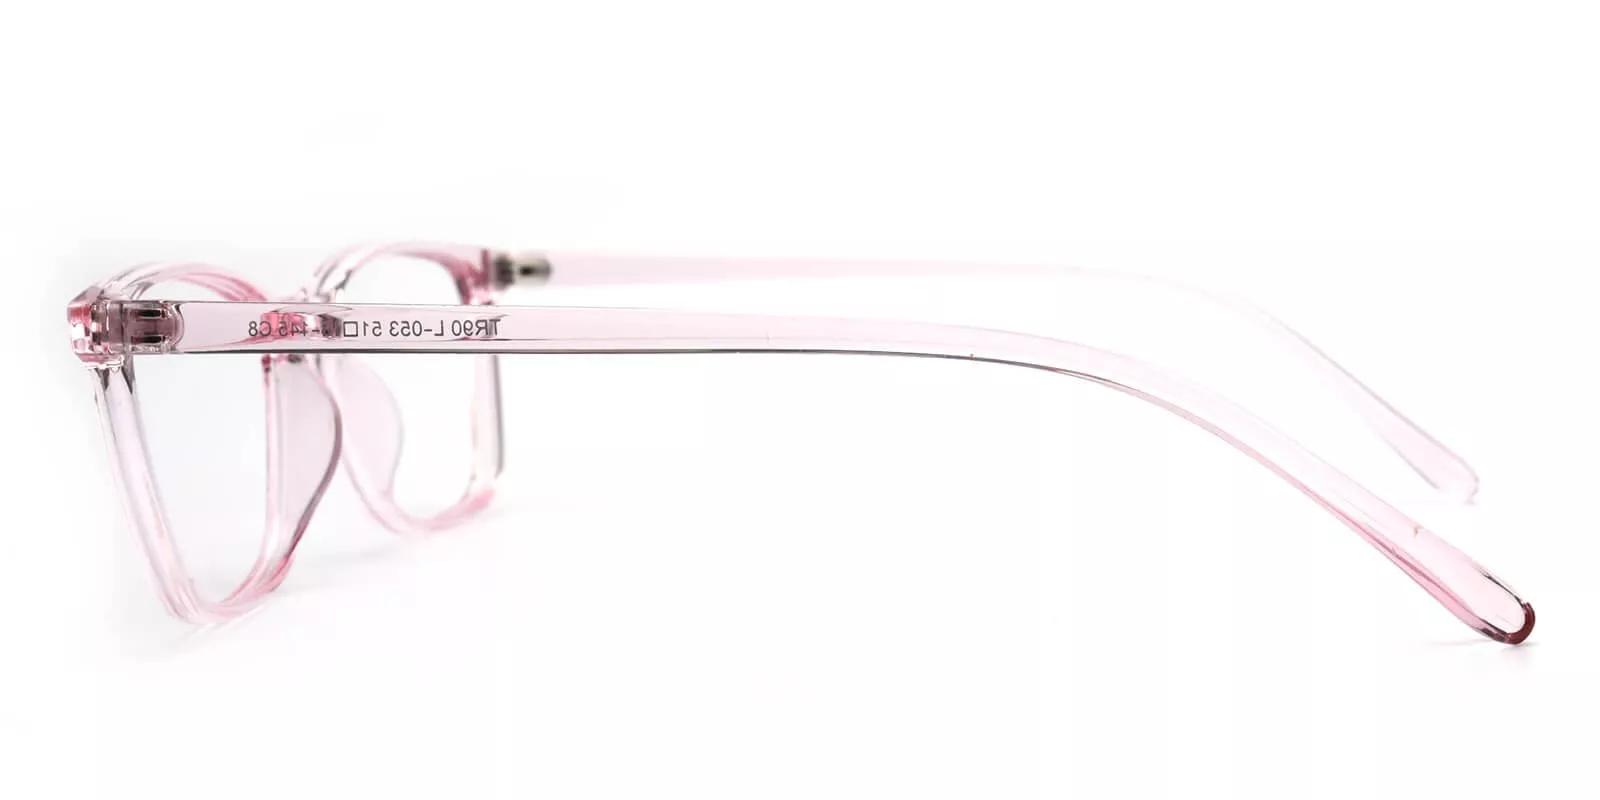 Davenport Light Weight Eyeglasses Pink Clear